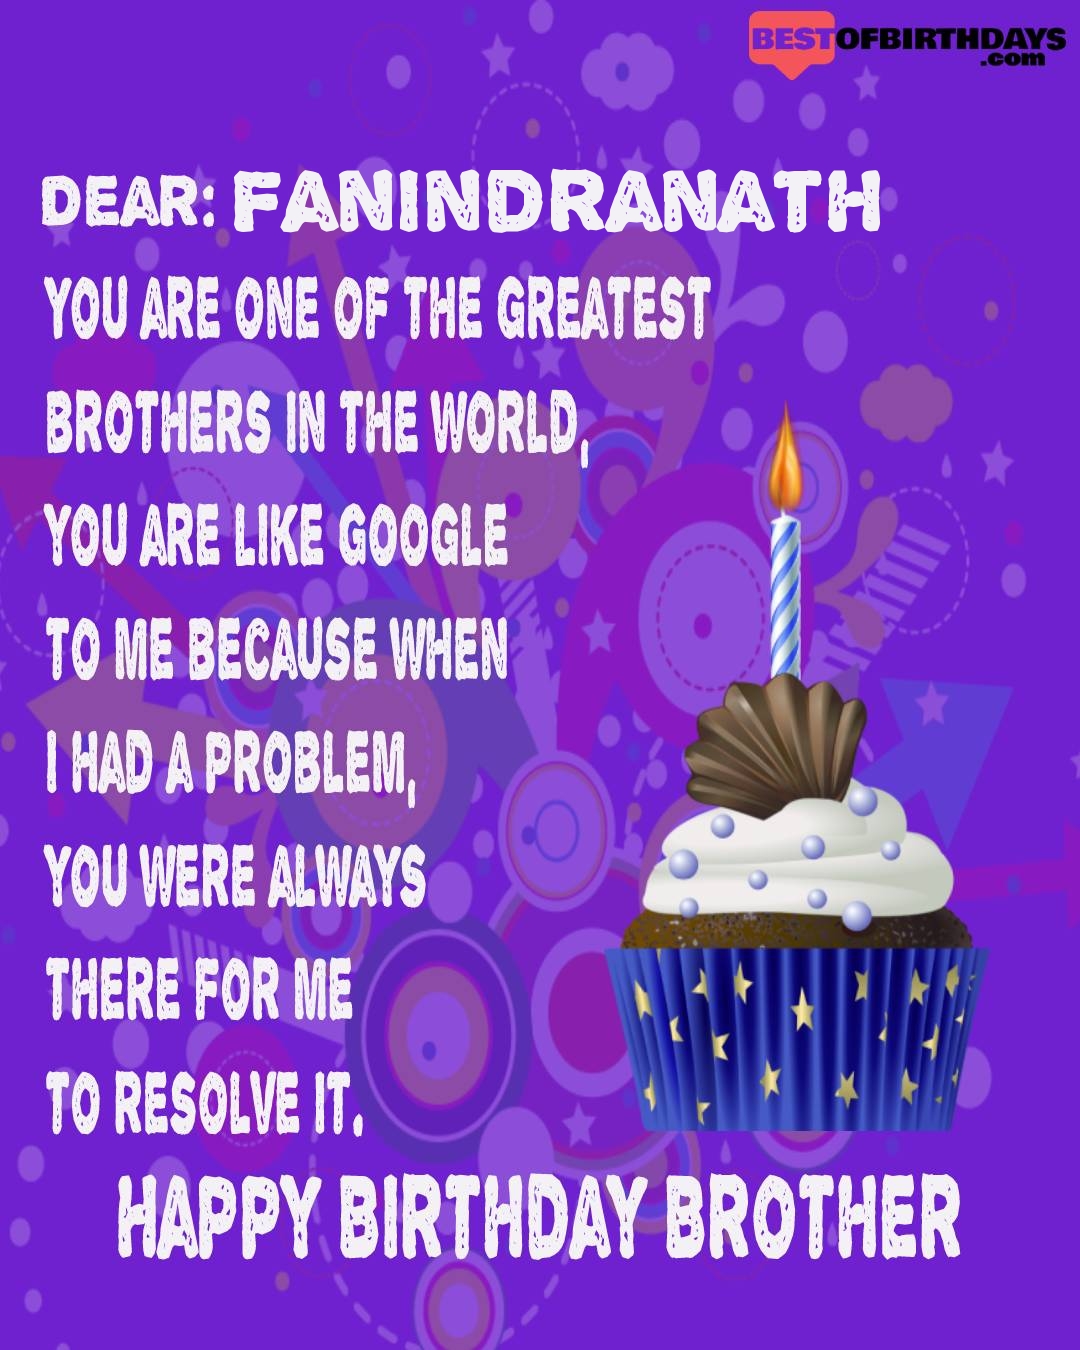 Happy birthday fanindranath bhai brother bro